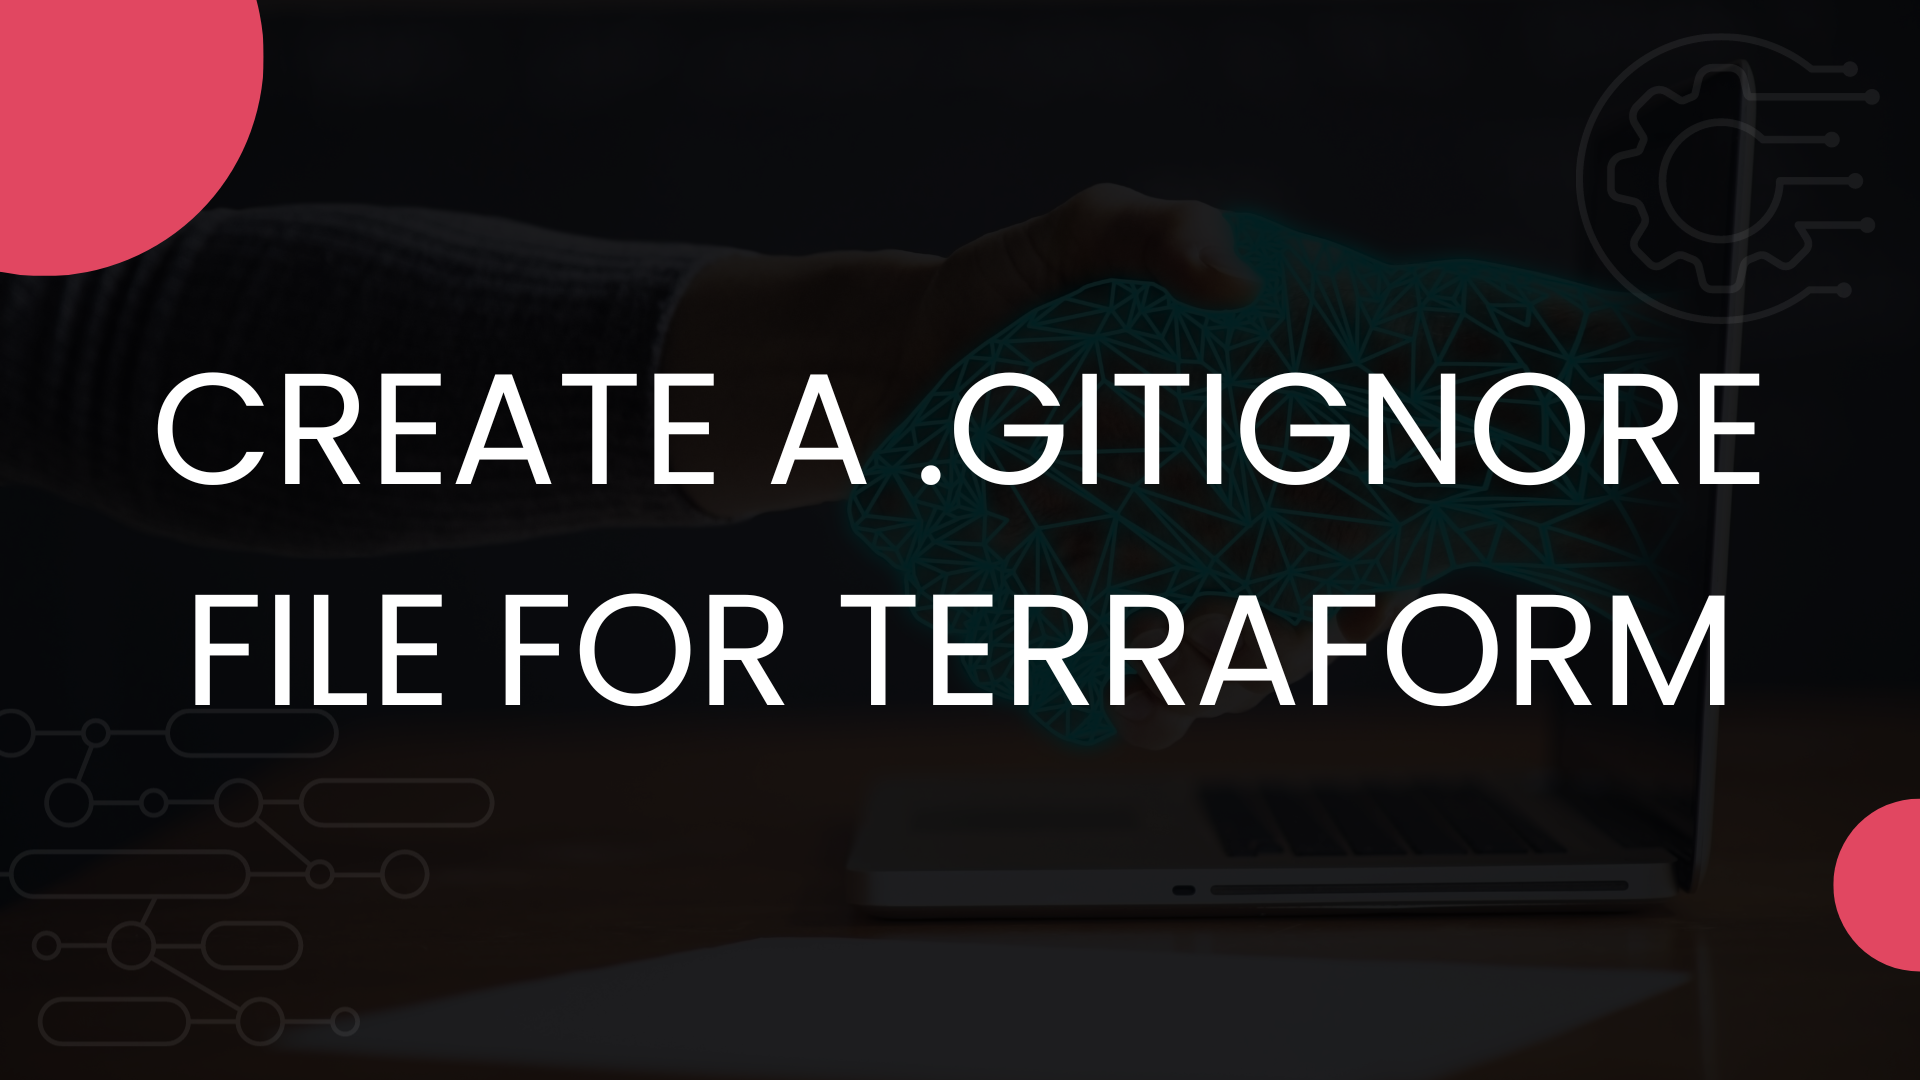 Create a .gitignore file for Terraform